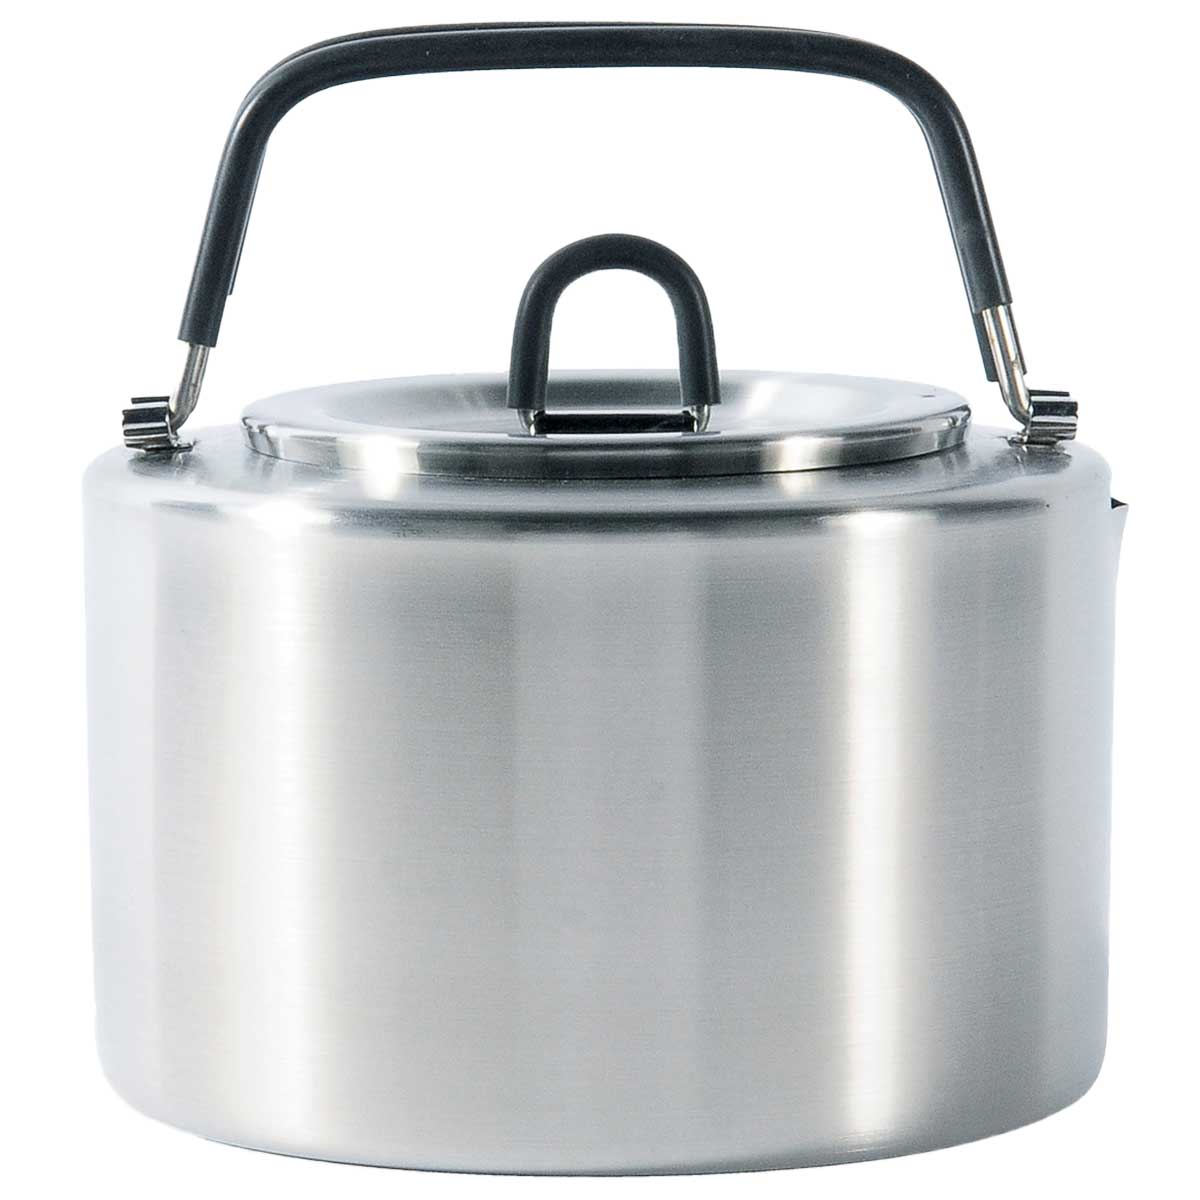 Czajnik turystyczny Tatonka Teapot Stainless Steel - 1,5 l 